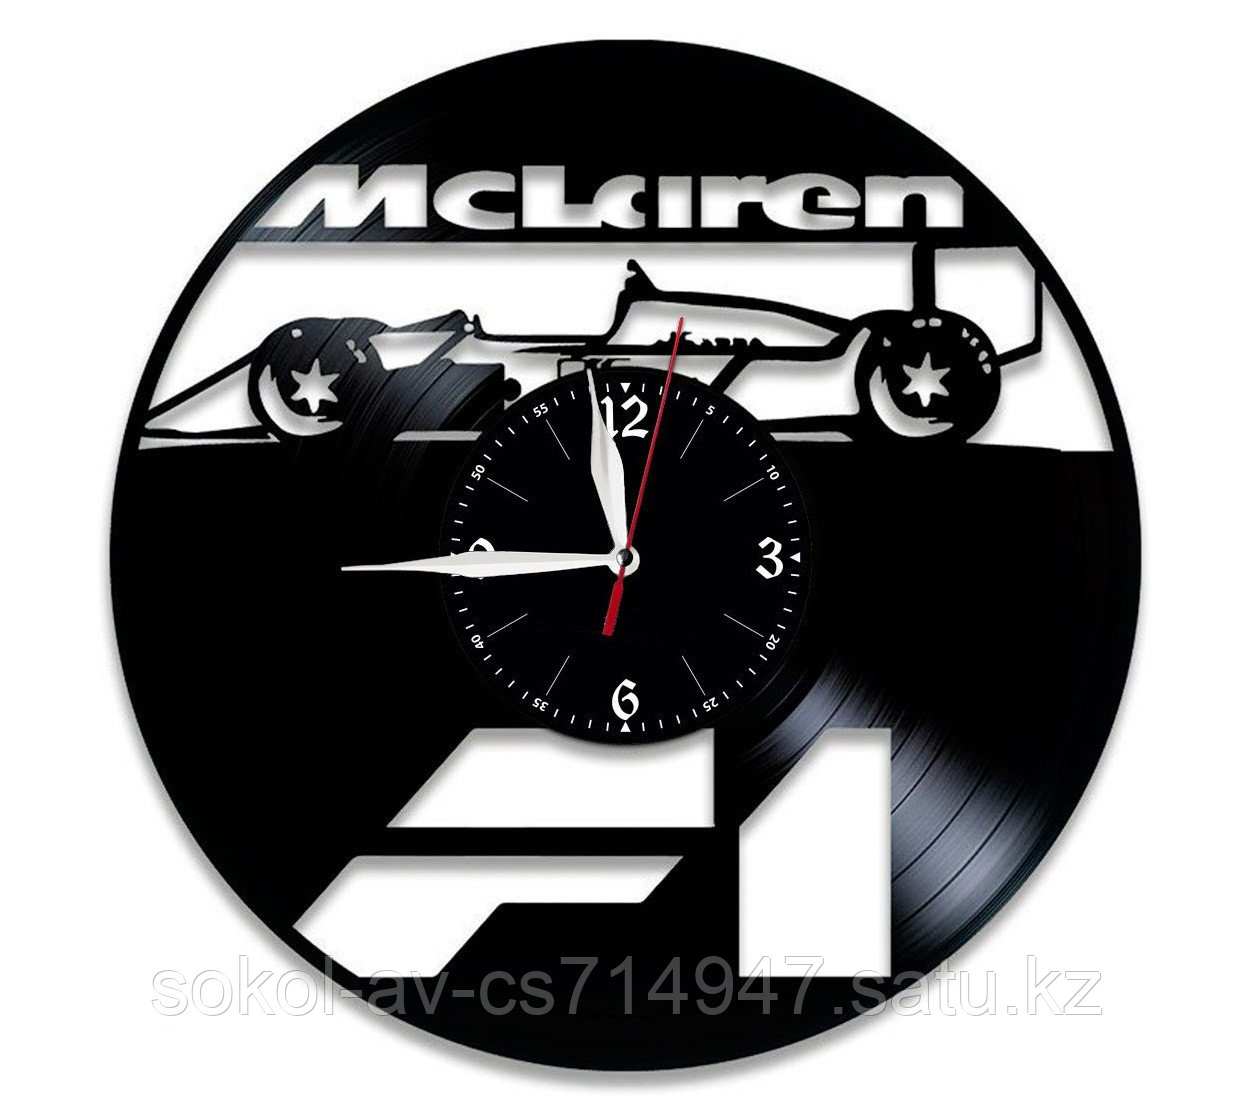 Часы из пластинки, авто McLaren Макларен Формула 1 Formula 1, подарок фанатам, любителям, 0393